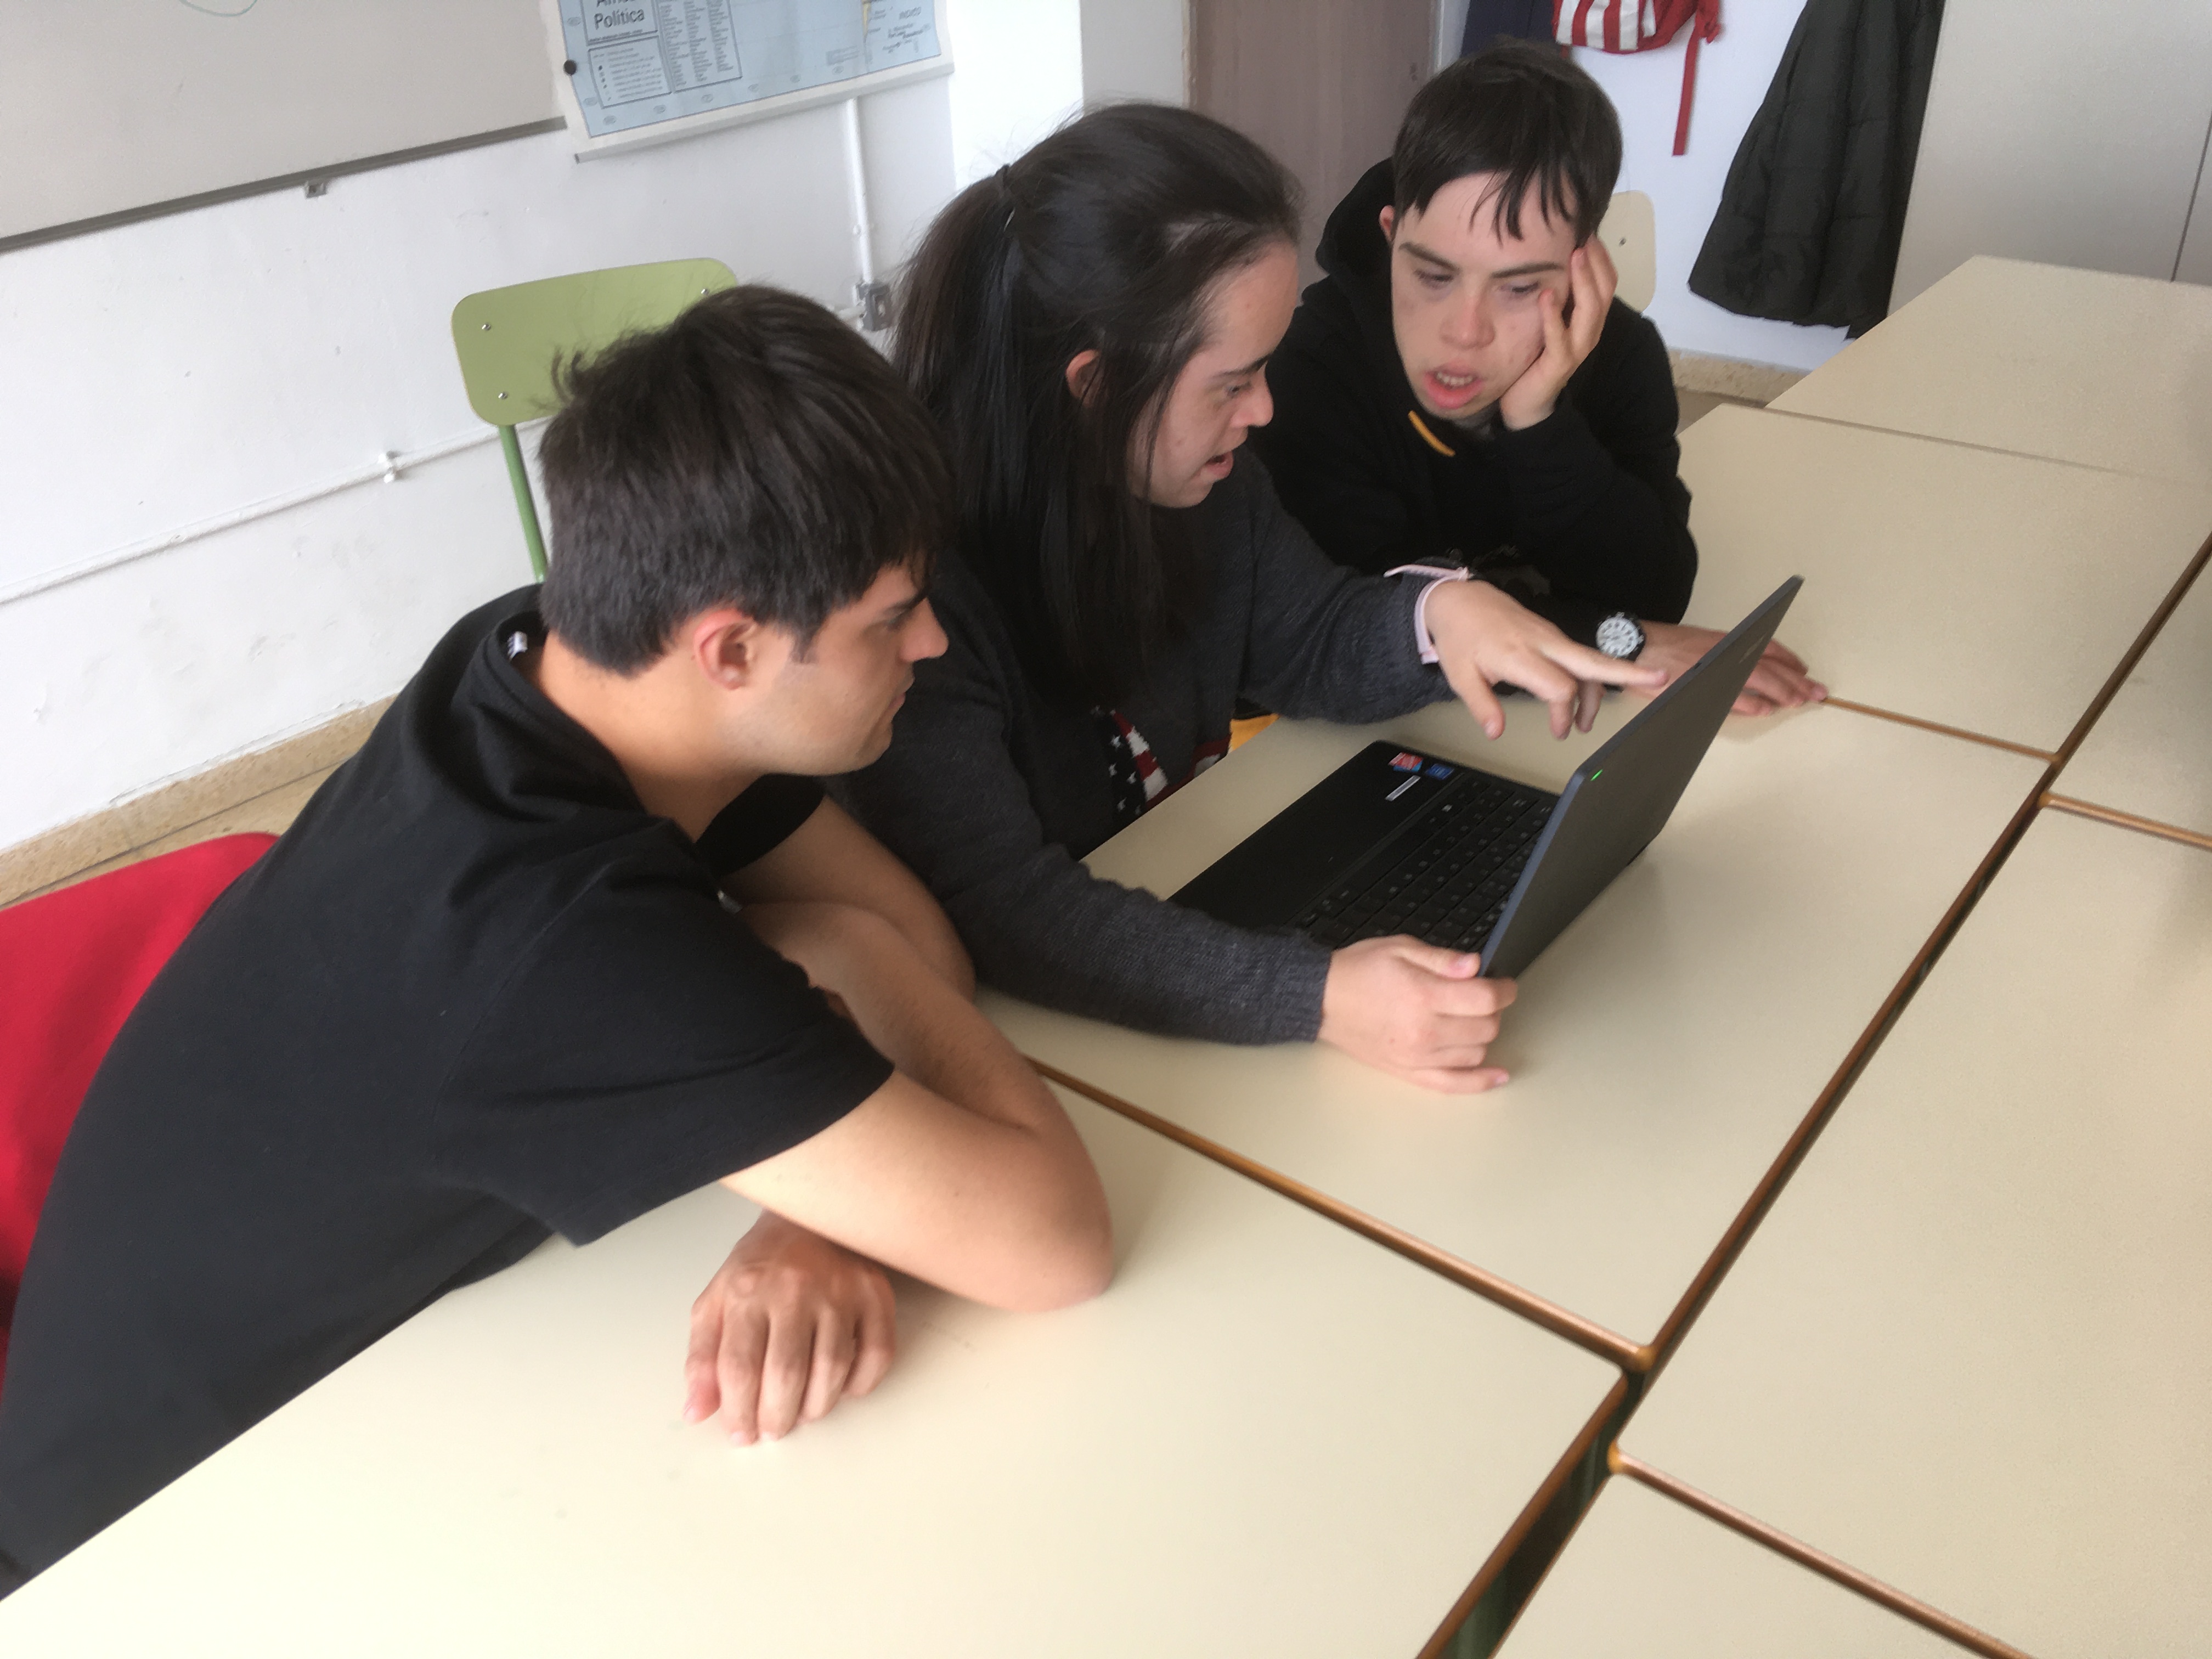 Grupo de alumnos usando ordenador portátil